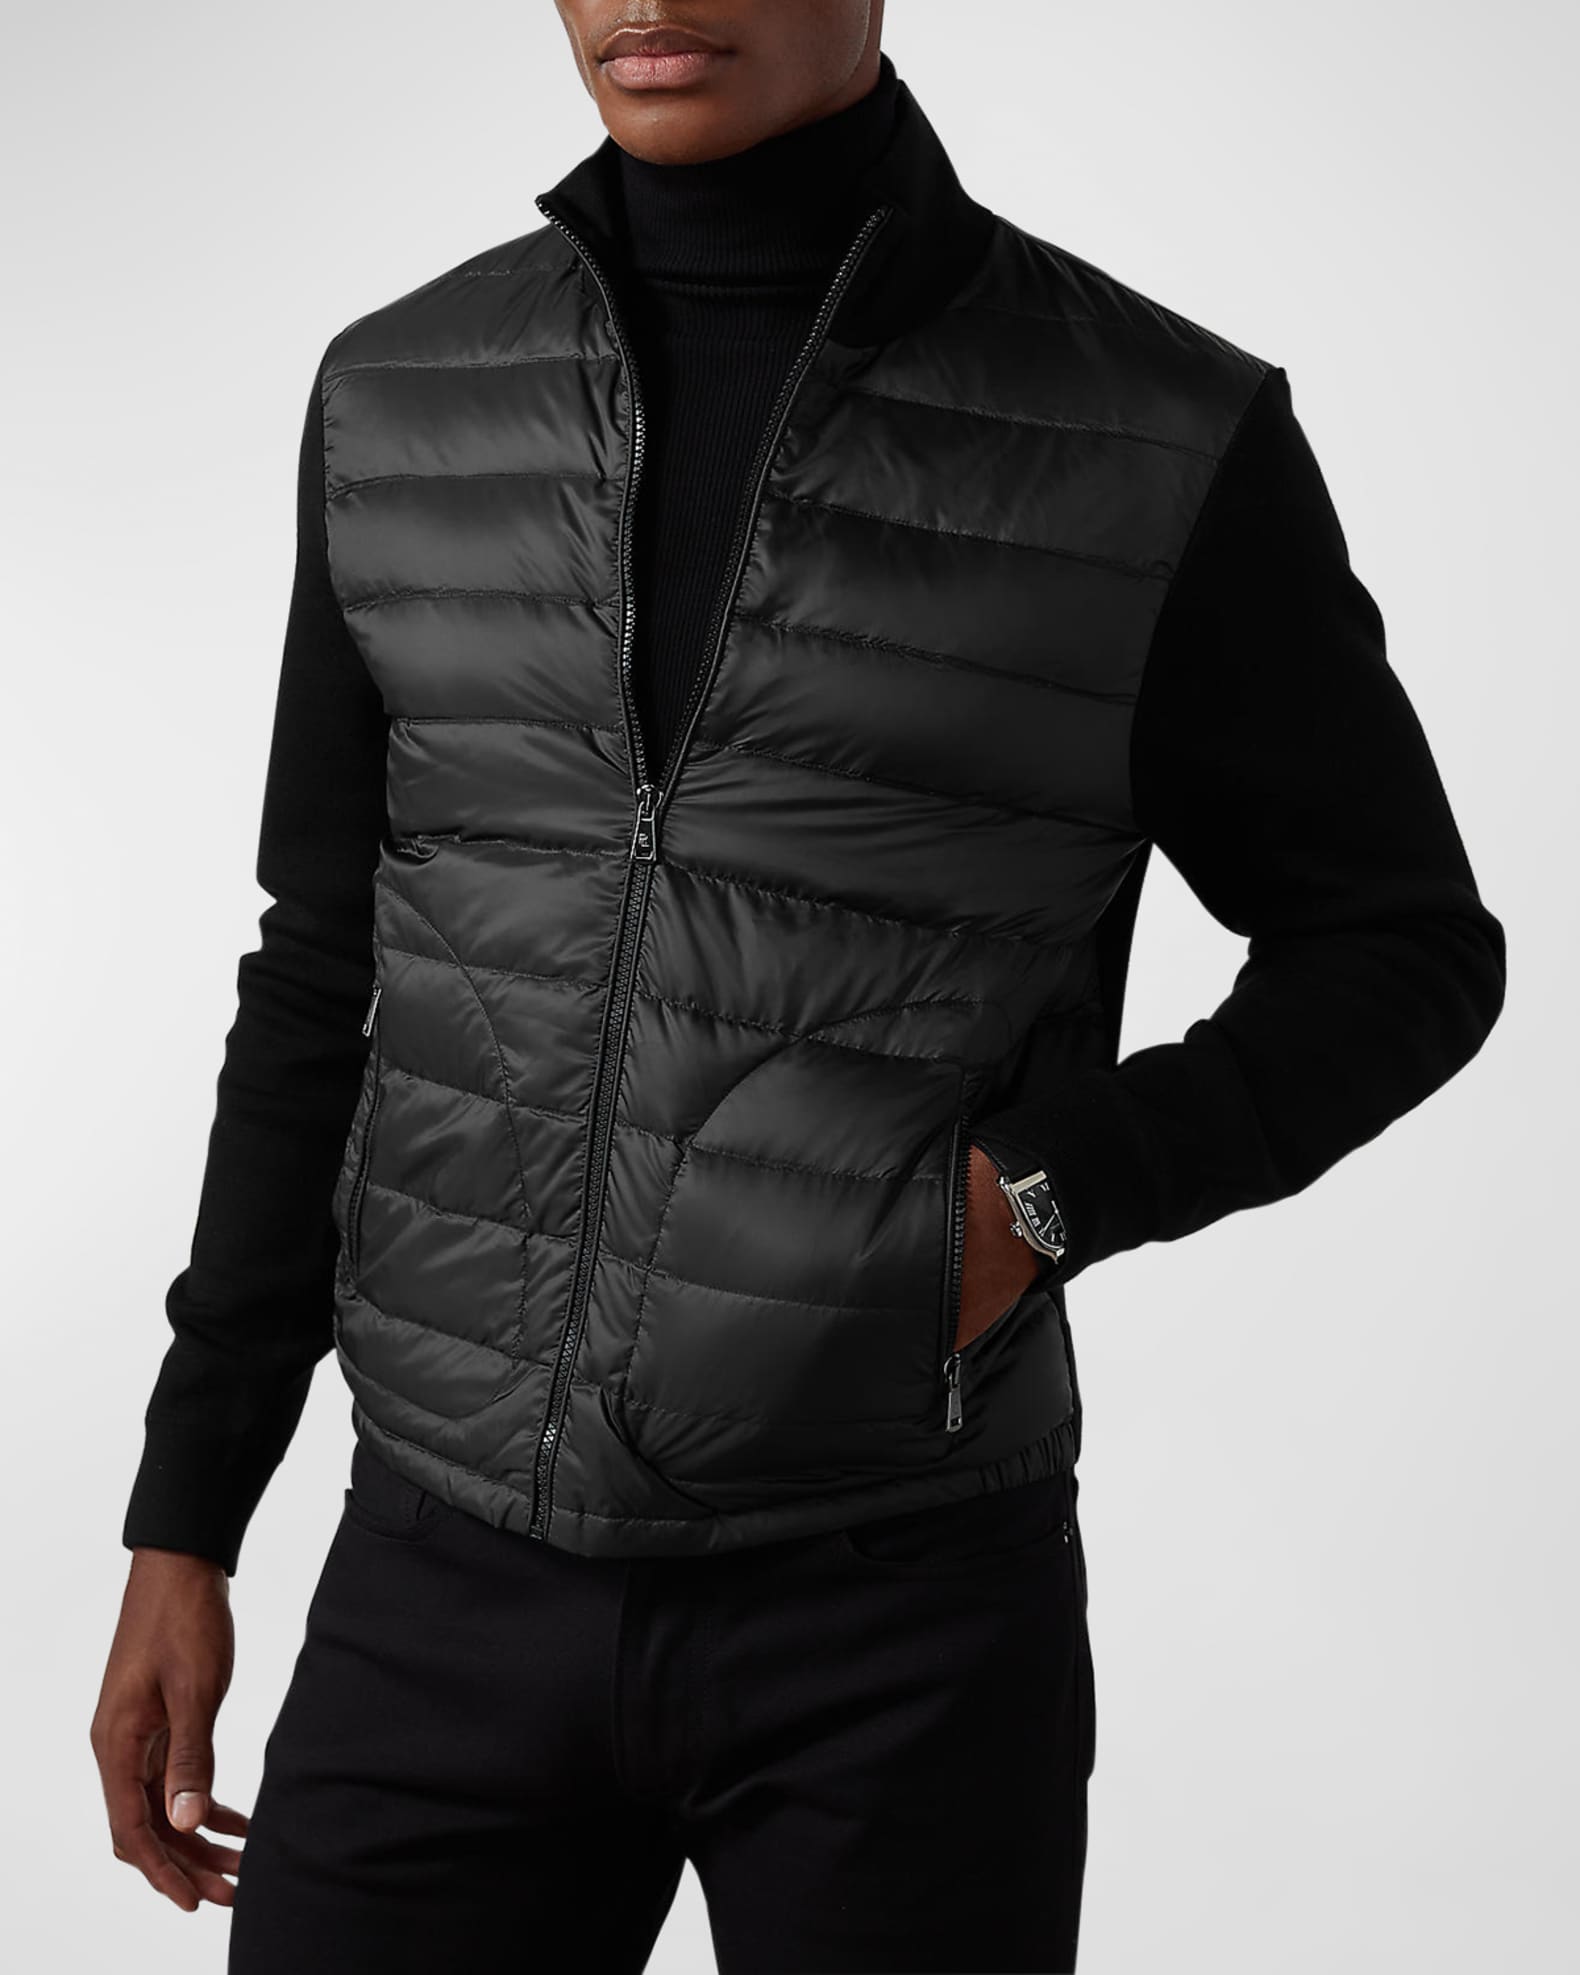 Ralph Lauren Purple Label Men's Double Face Wool Hybrid Jacket in Polo Black